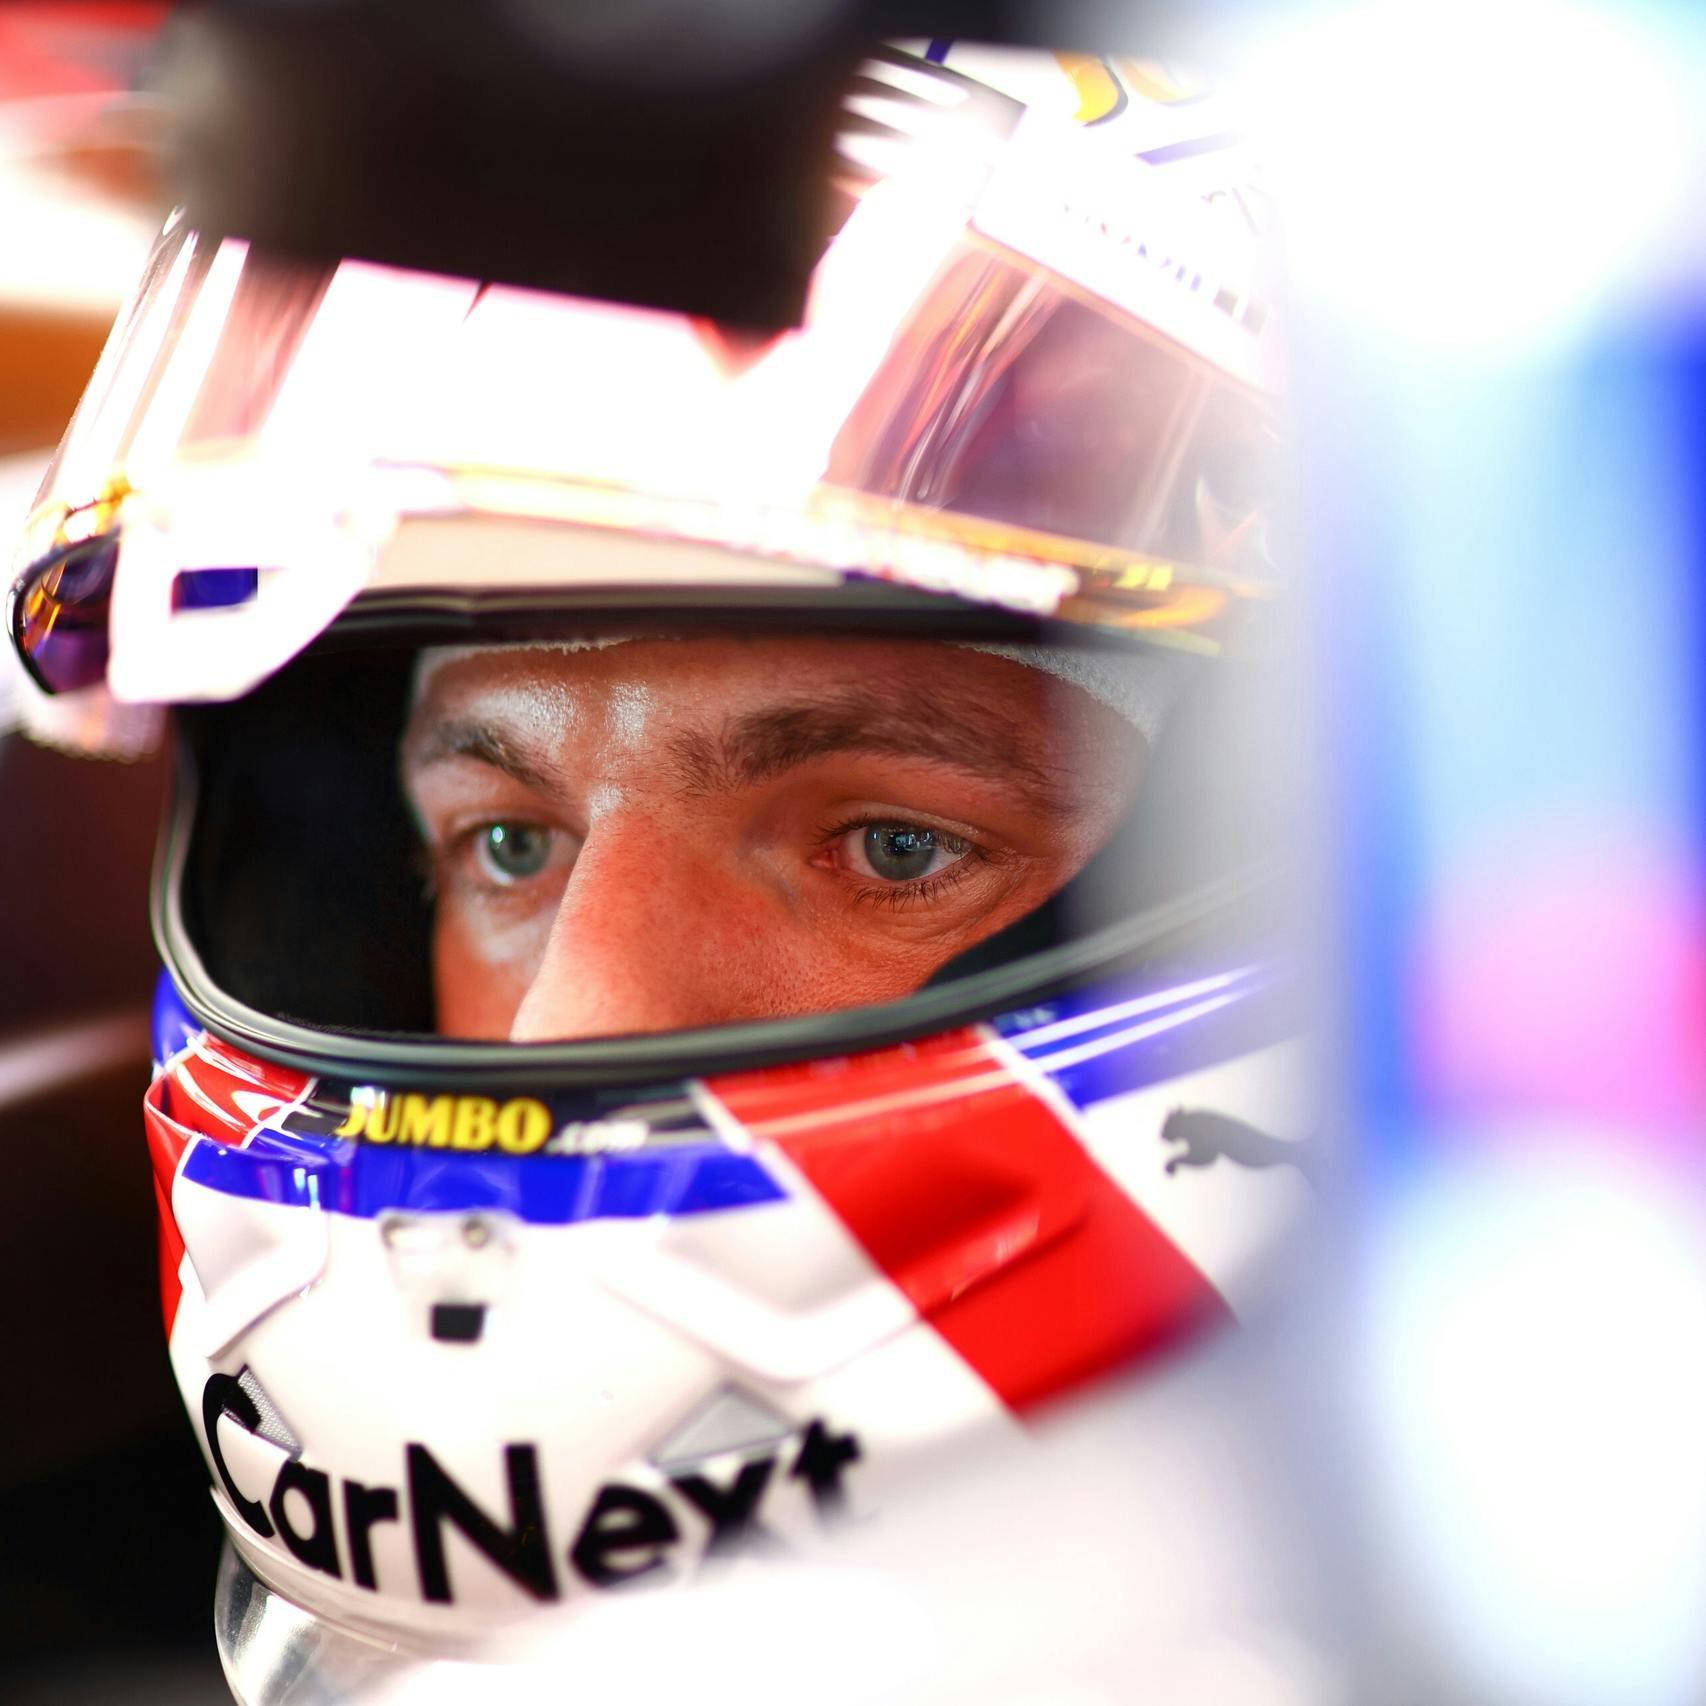 Jumbo stopt met sponsoring Max Verstappen